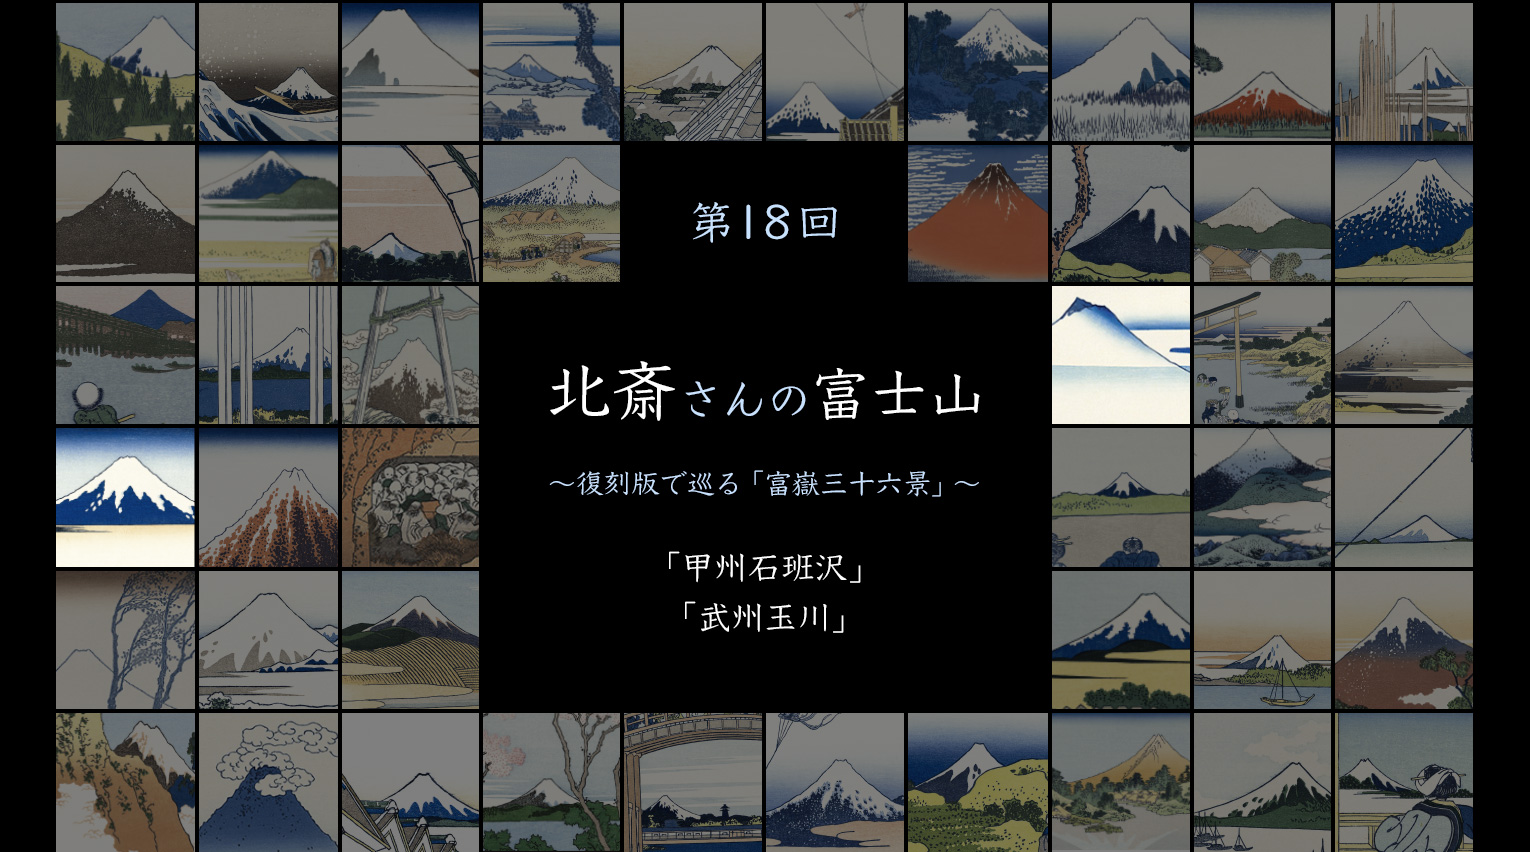 北斎さんの富士山 〜復刻版で見る「富嶽三十六景」〜 (18)【PR】